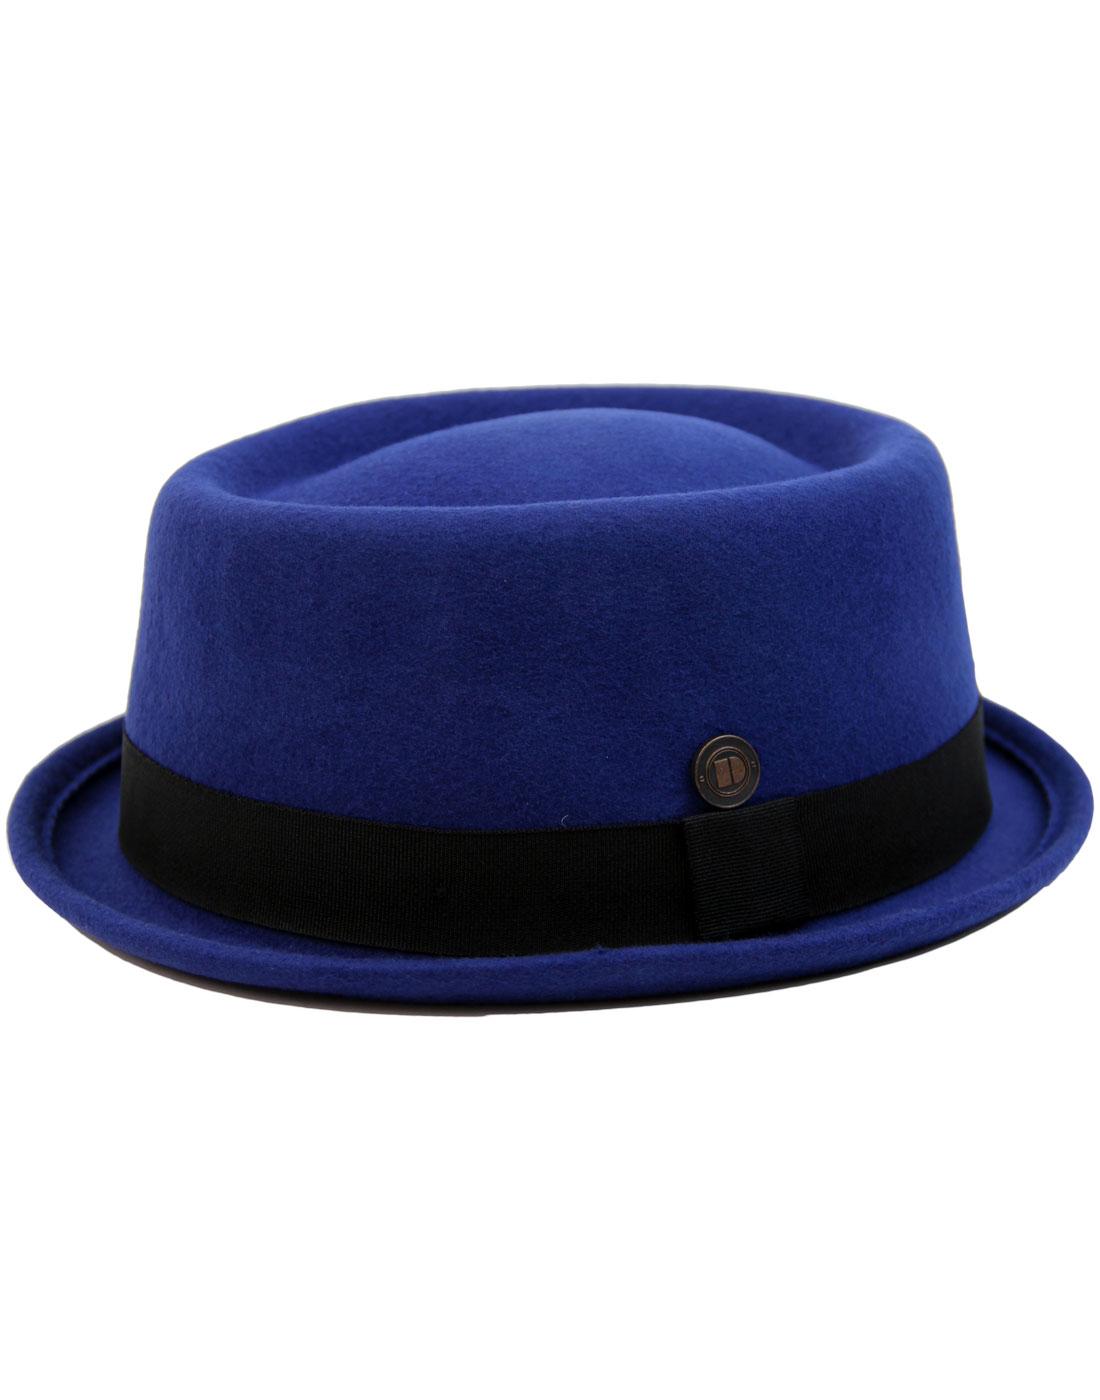 Jack DASMARCA Mod Revival Ska Porkpie Hat BLUE